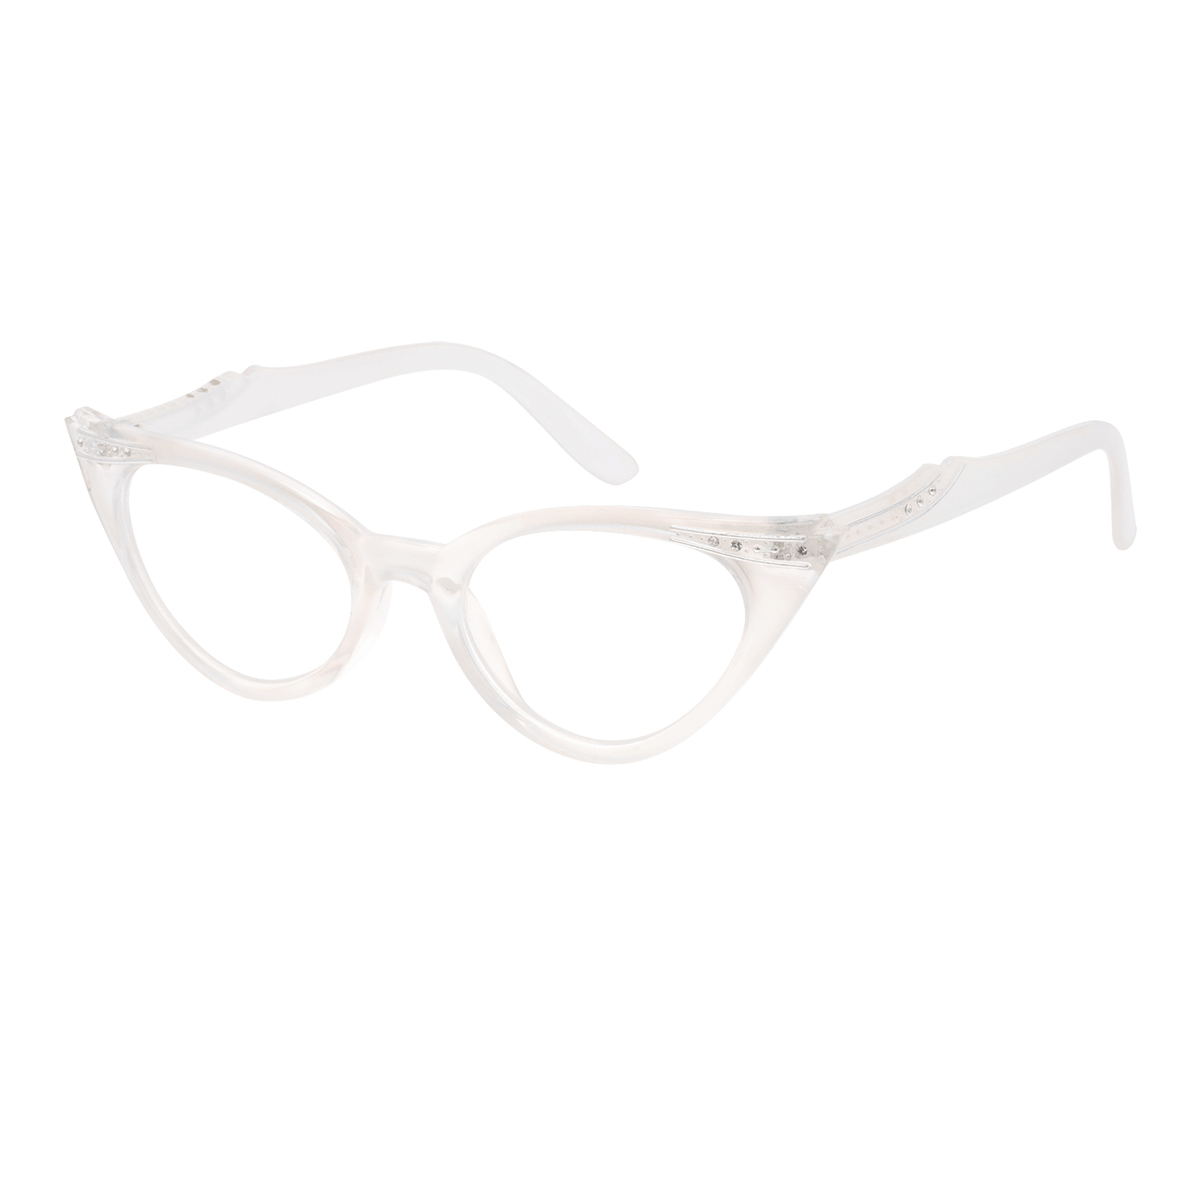 Darcey - Cat-eye White Reading Glasses for Women